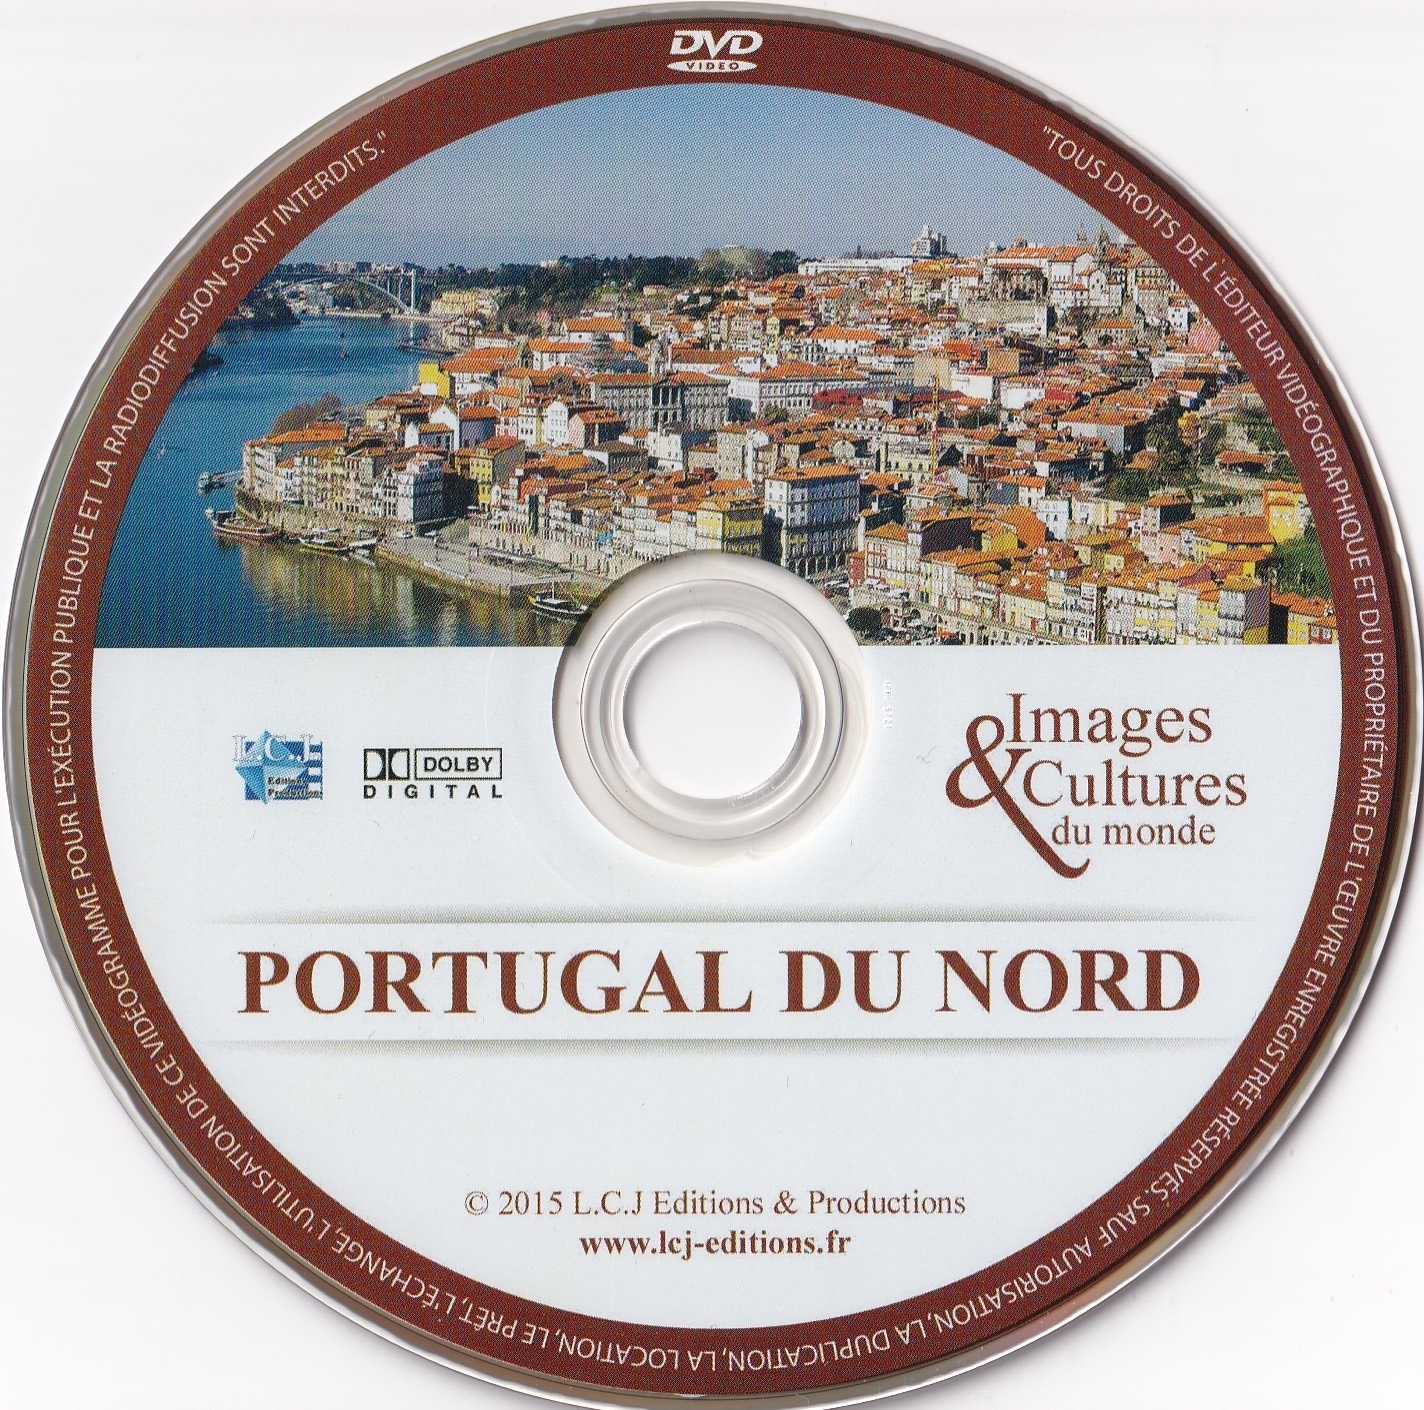 Portugual du Nord Terre de Traditions